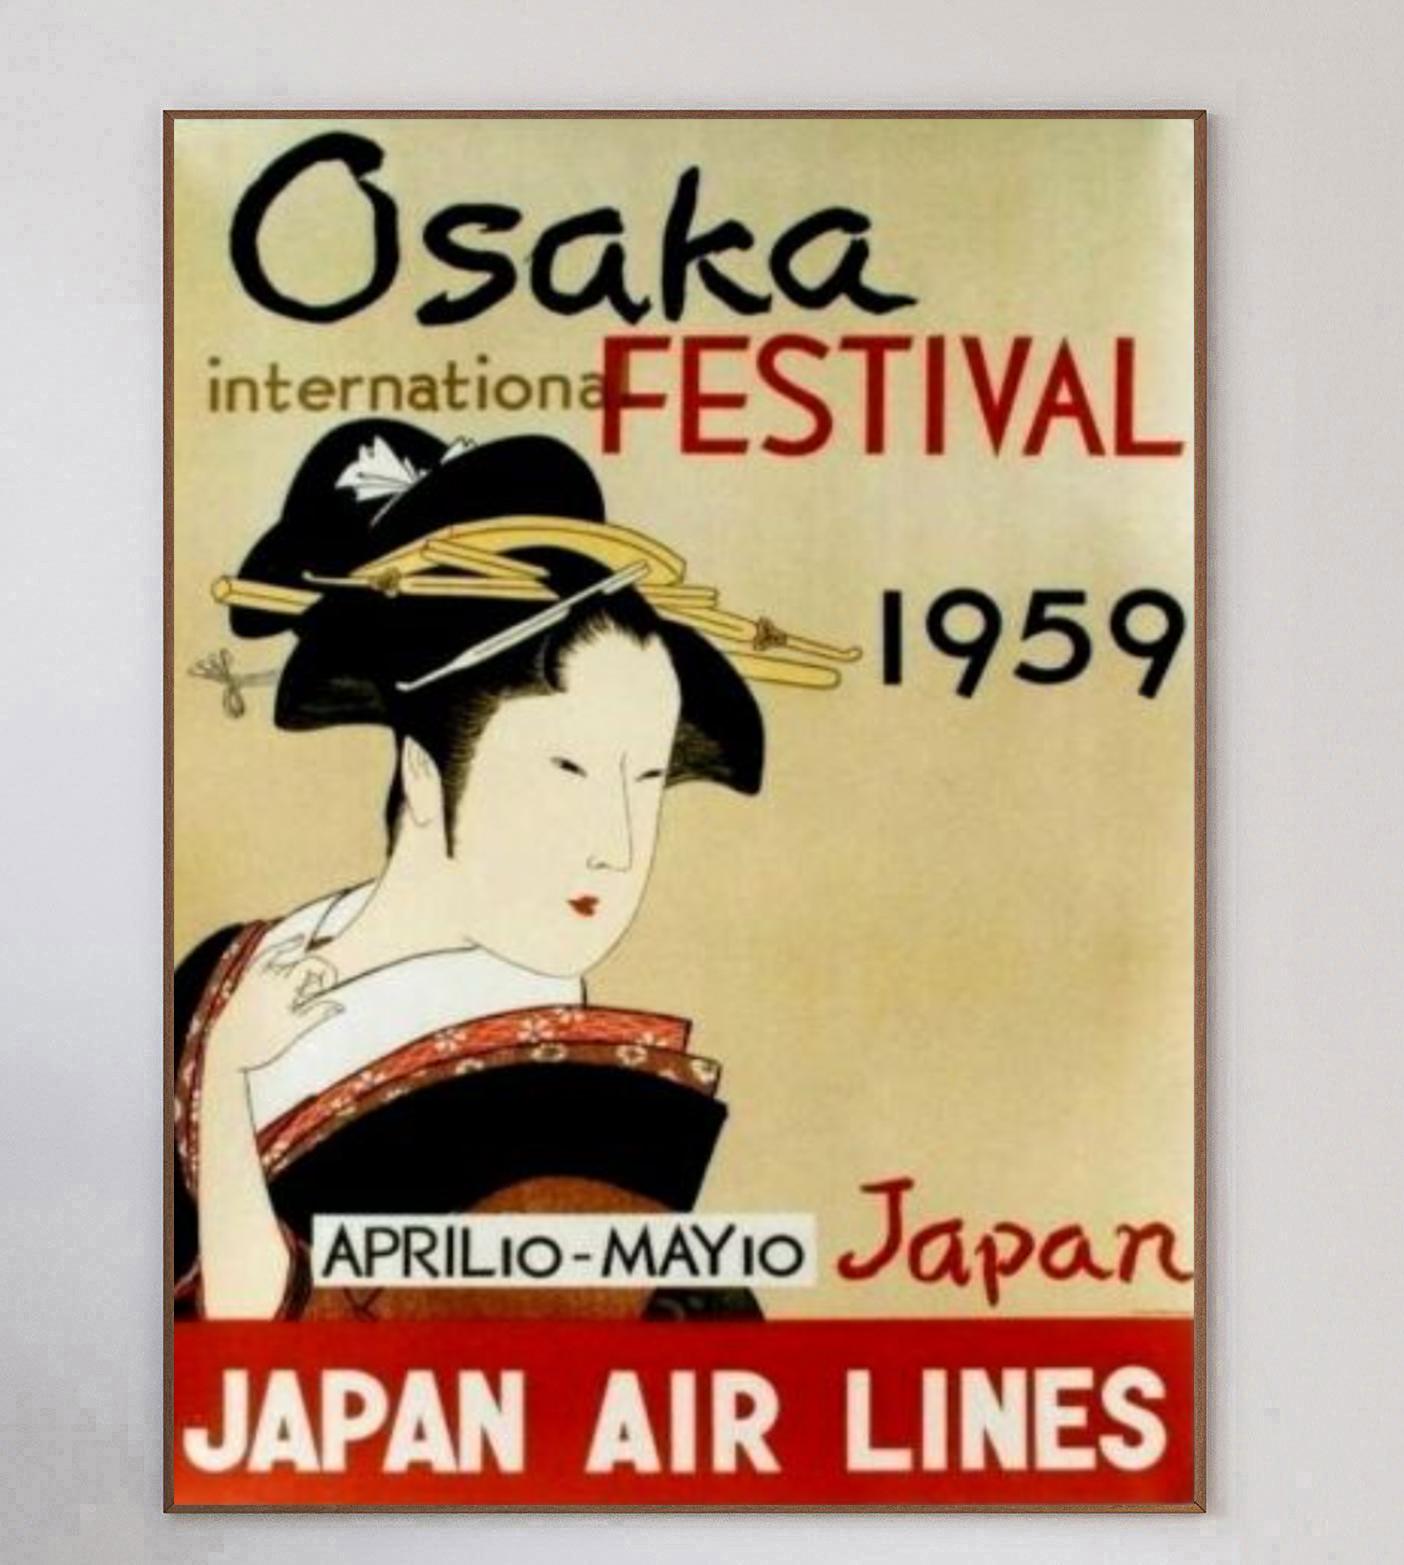 Représentant une geisha dans un style traditionnel, cette affiche brillante et rare a été produite en 1959 pour promouvoir les itinéraires de Japan Air Lines vers le festival international d'Osaka qui s'est tenu entre le 10 avril et le 10 mai de la